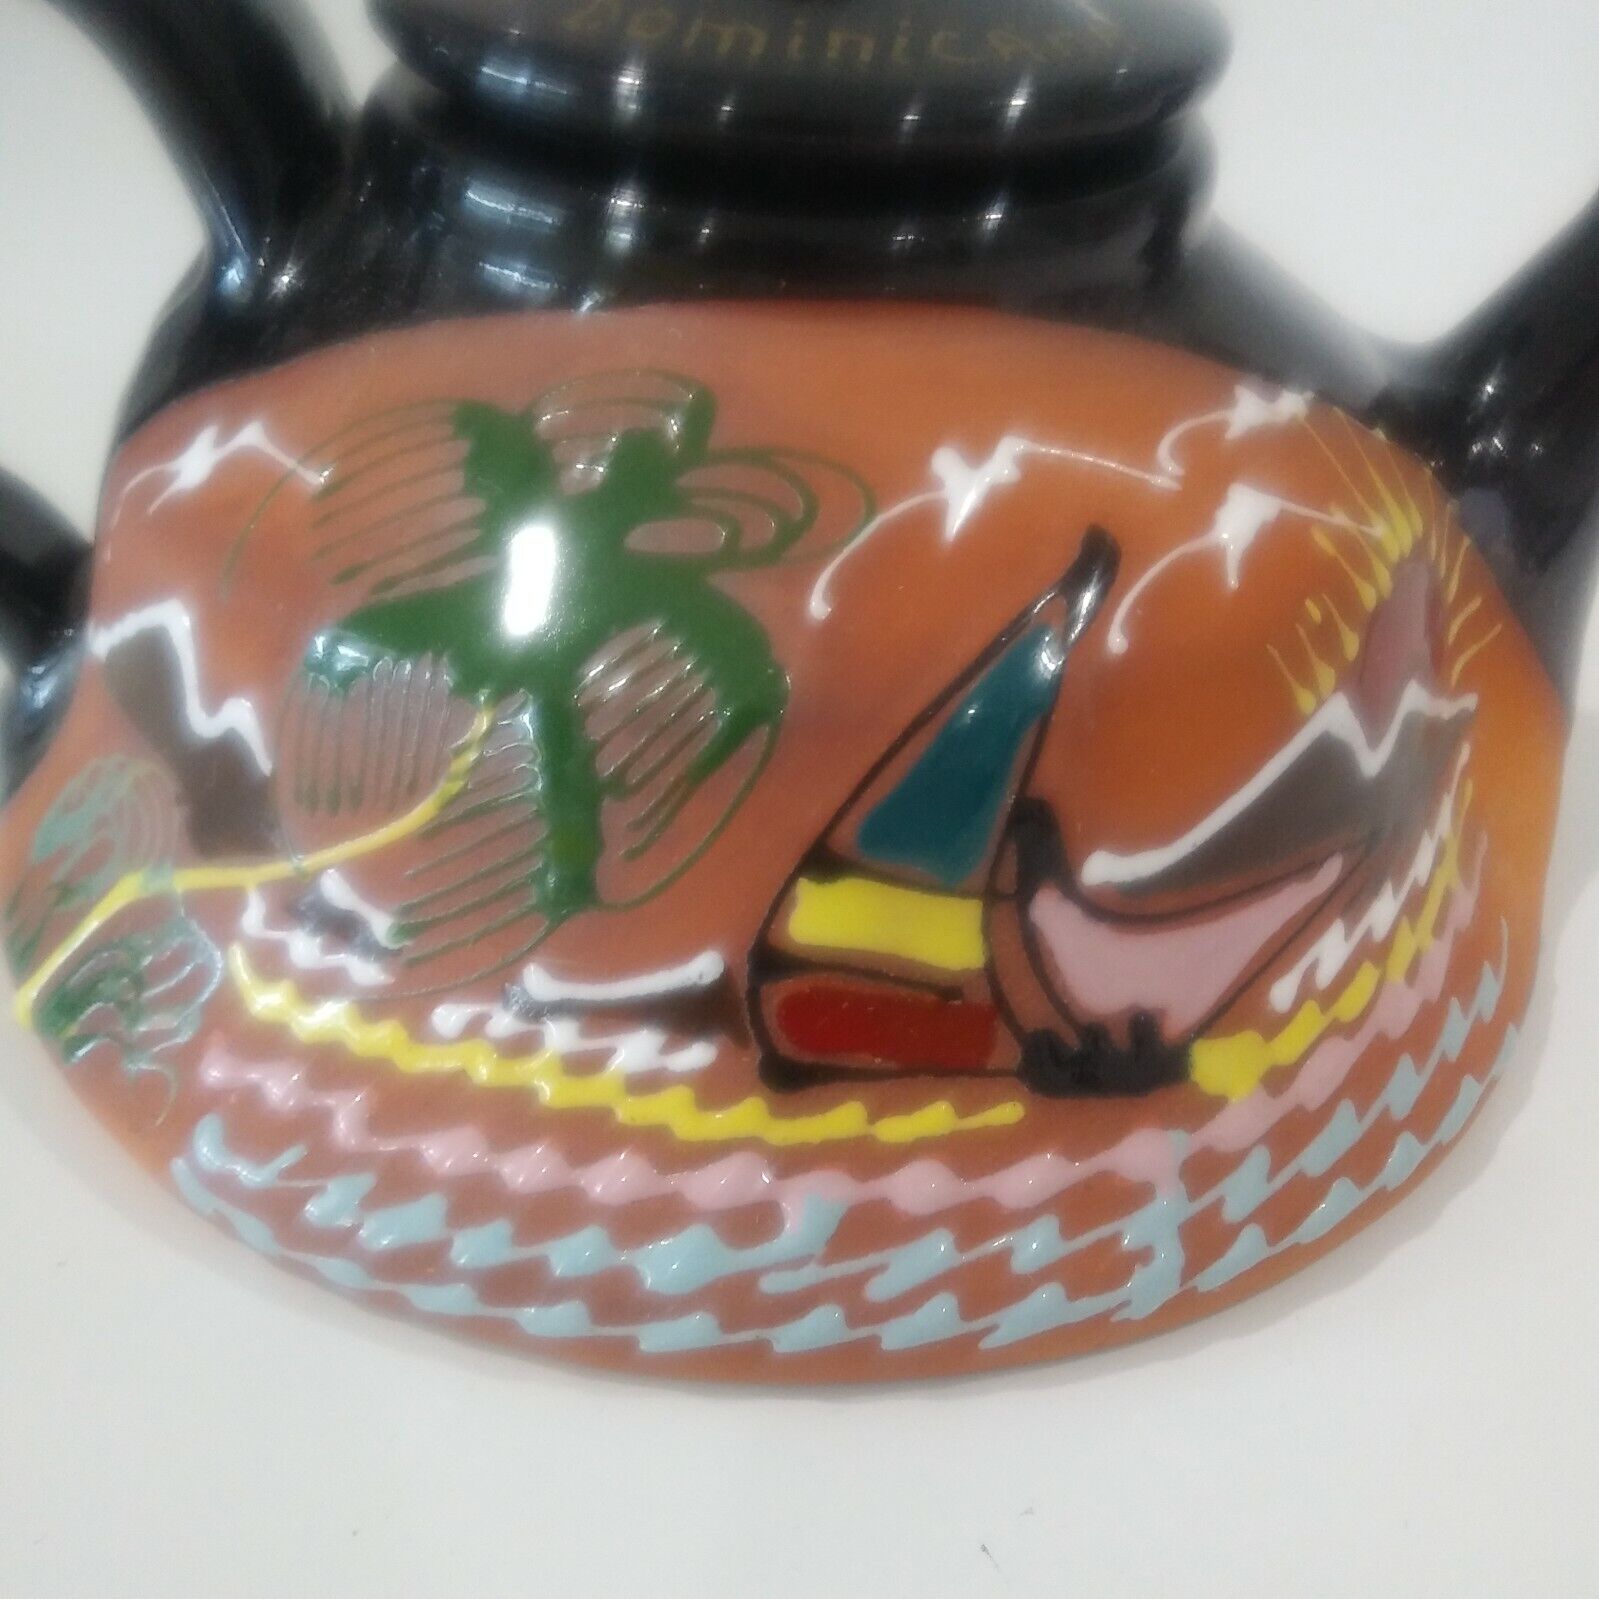 Republica Dominicana Teapot Colorful Glazed Terra Cotta Raised Glaze Design RARE